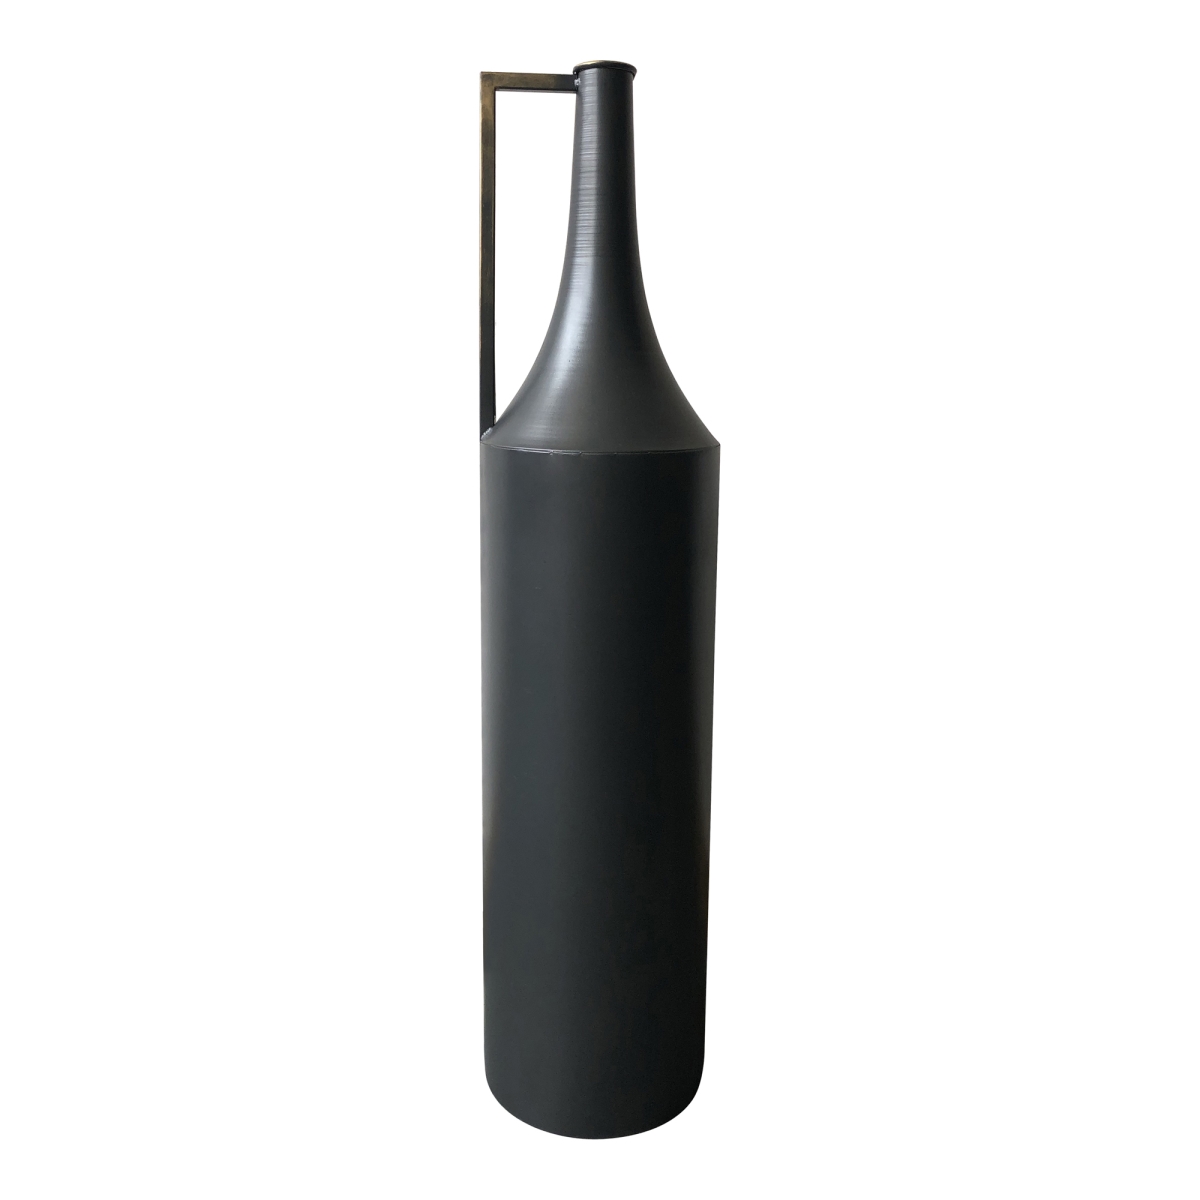 Kk-1016-02 Argus Metal Vase, Black